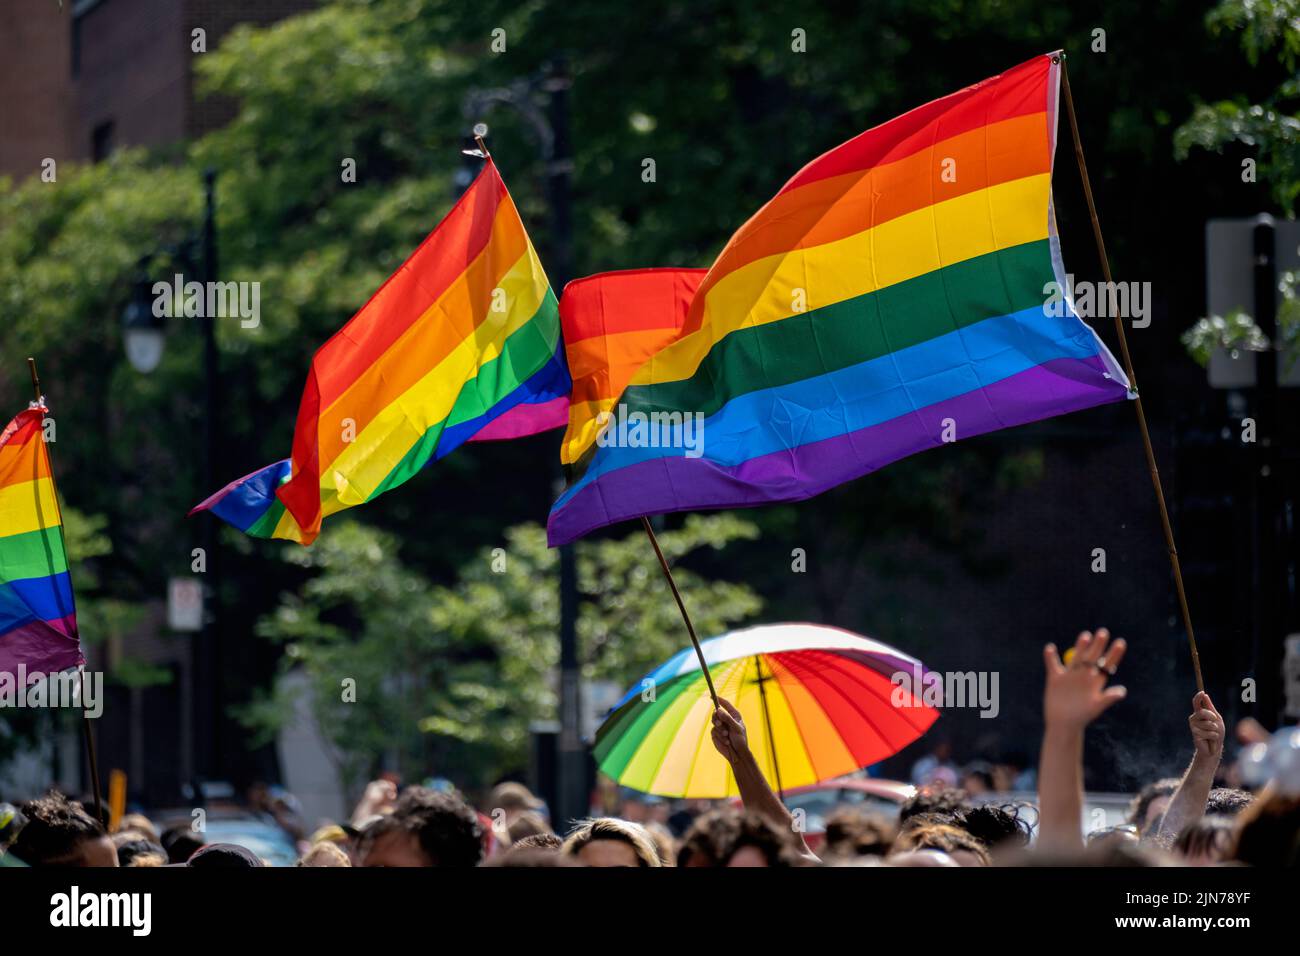 Montreal, CA - 7 de agosto de 2022: Banderas de arco iris gay ondeando sobre la multitud borrosa Foto de stock